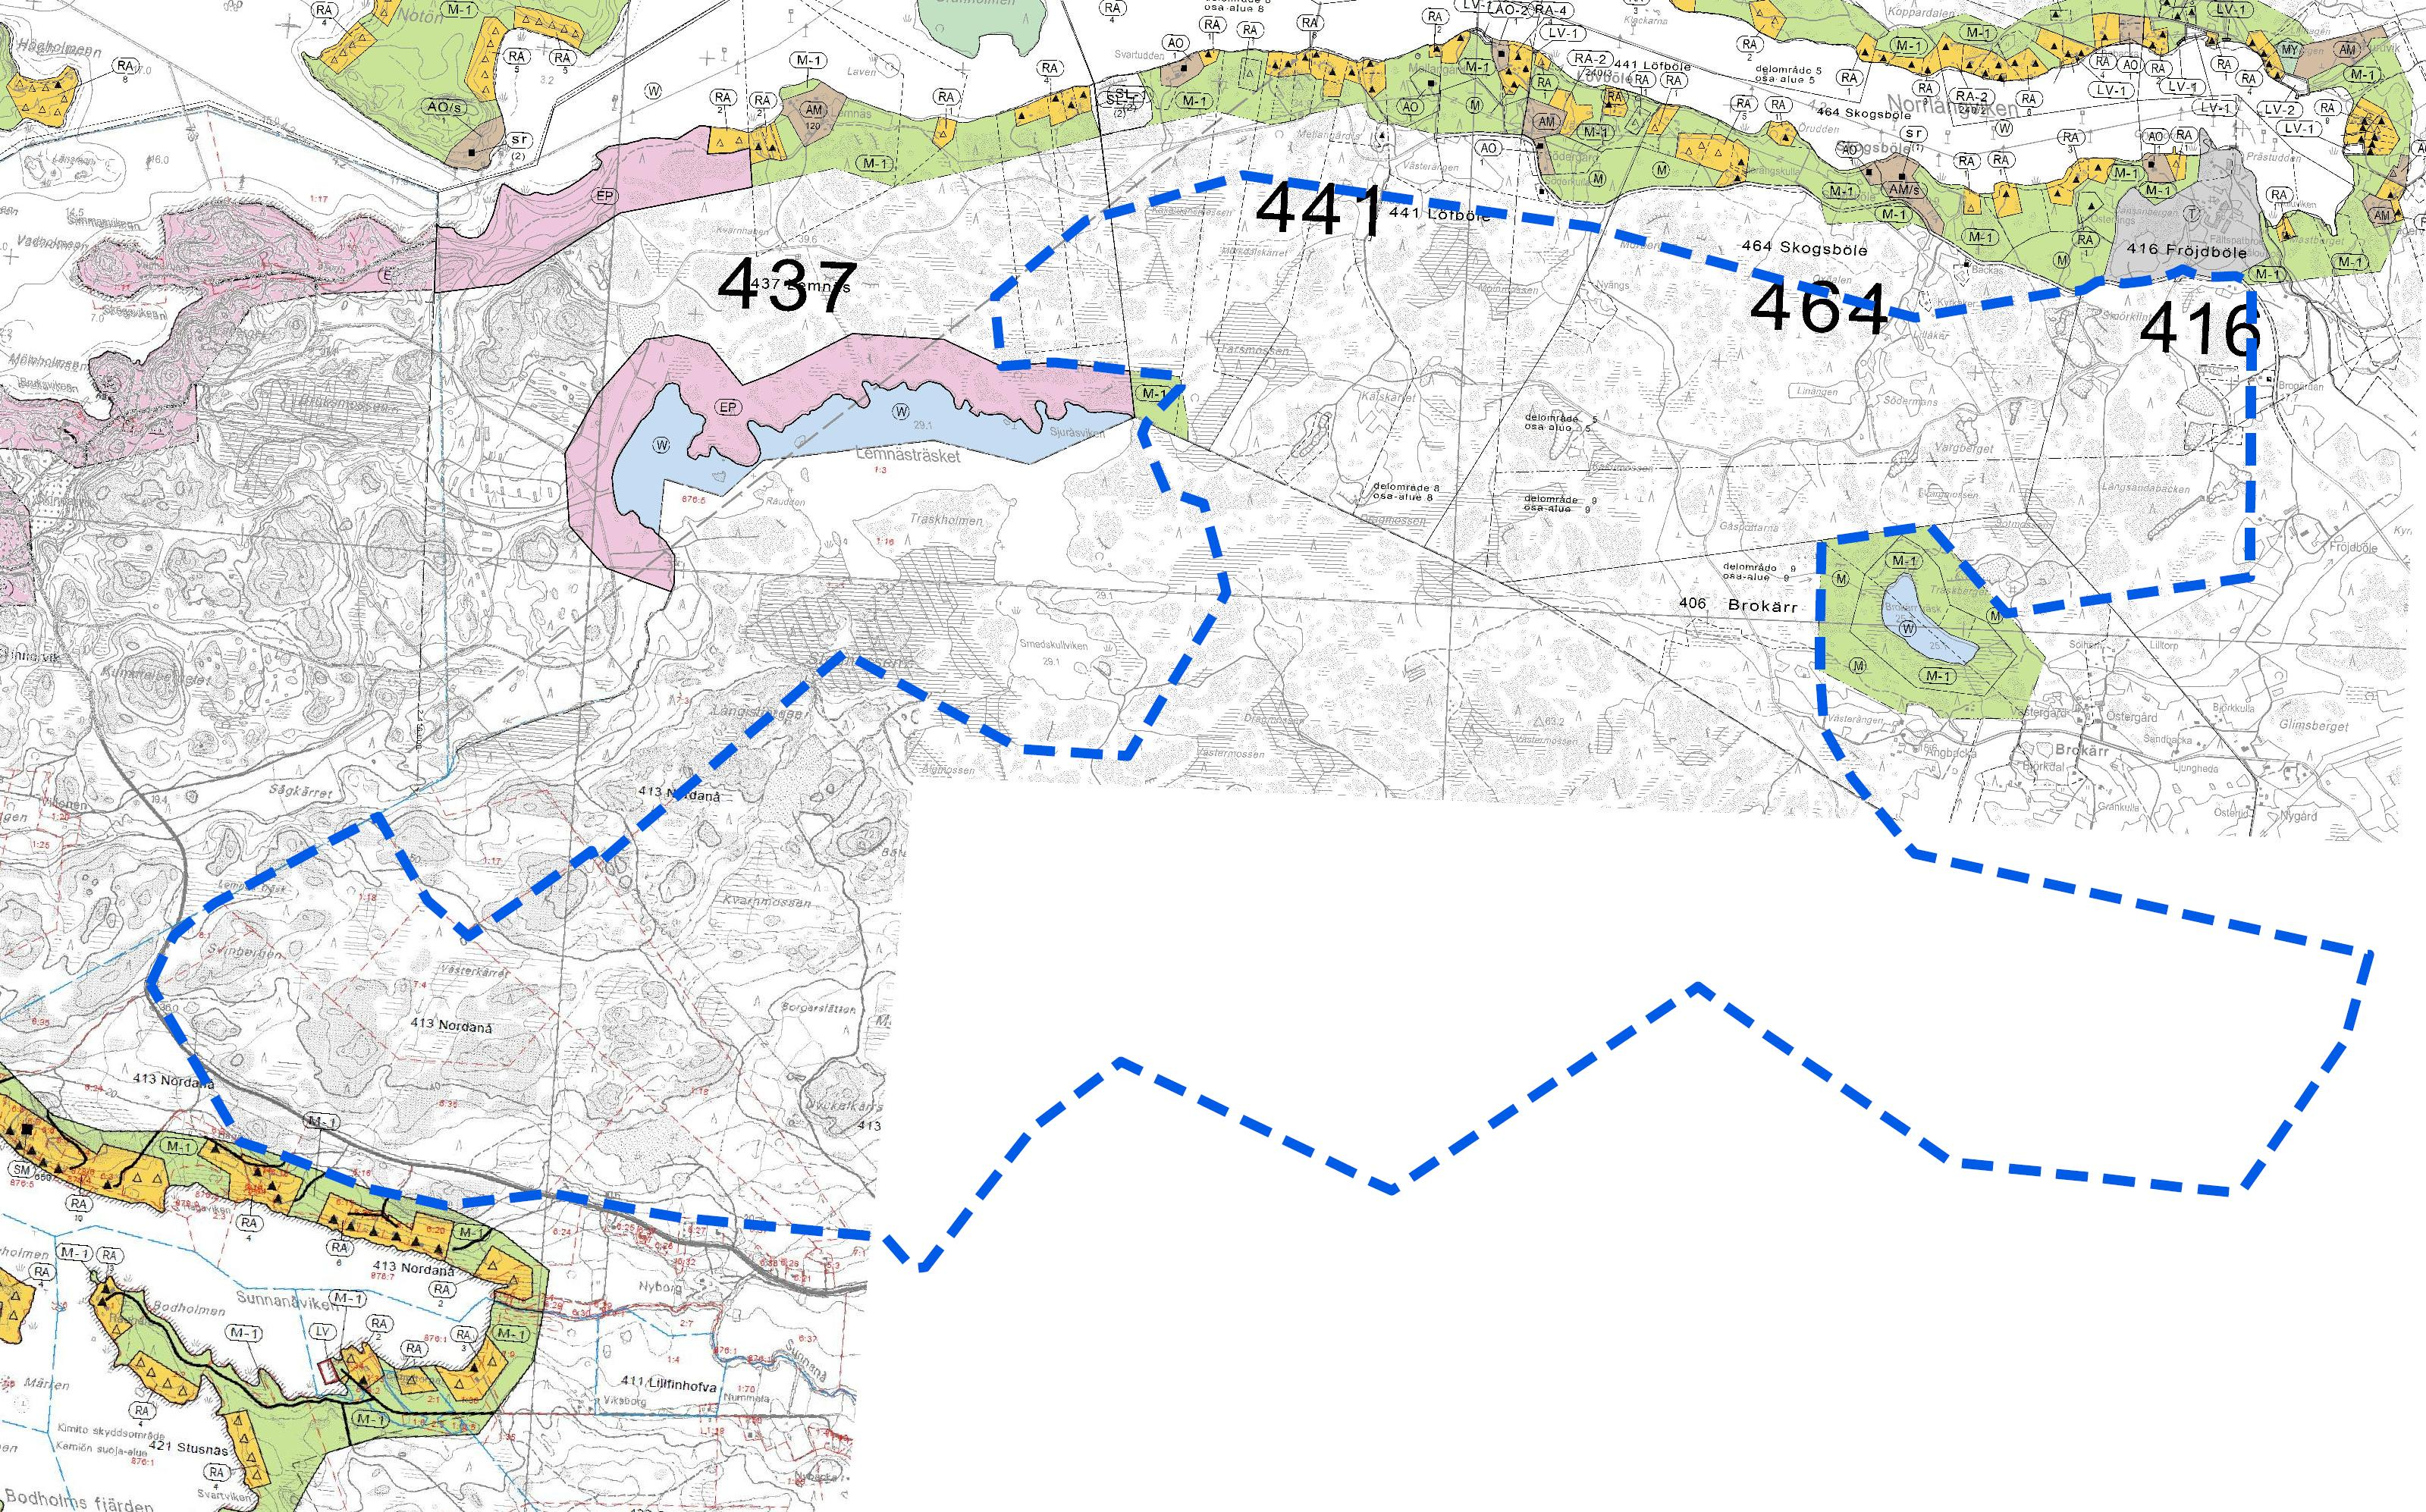 Yhdistelmä Kemiön rantaosayleiskaavasta (pohjoisessa) ja Dragsfjärdin läntisen saariston rantaosayleiskaavasta (lounaiskulma), sekä suunnittelualueen ohjeellinen rajaus sinisellä katkoviivalla. 3.1.